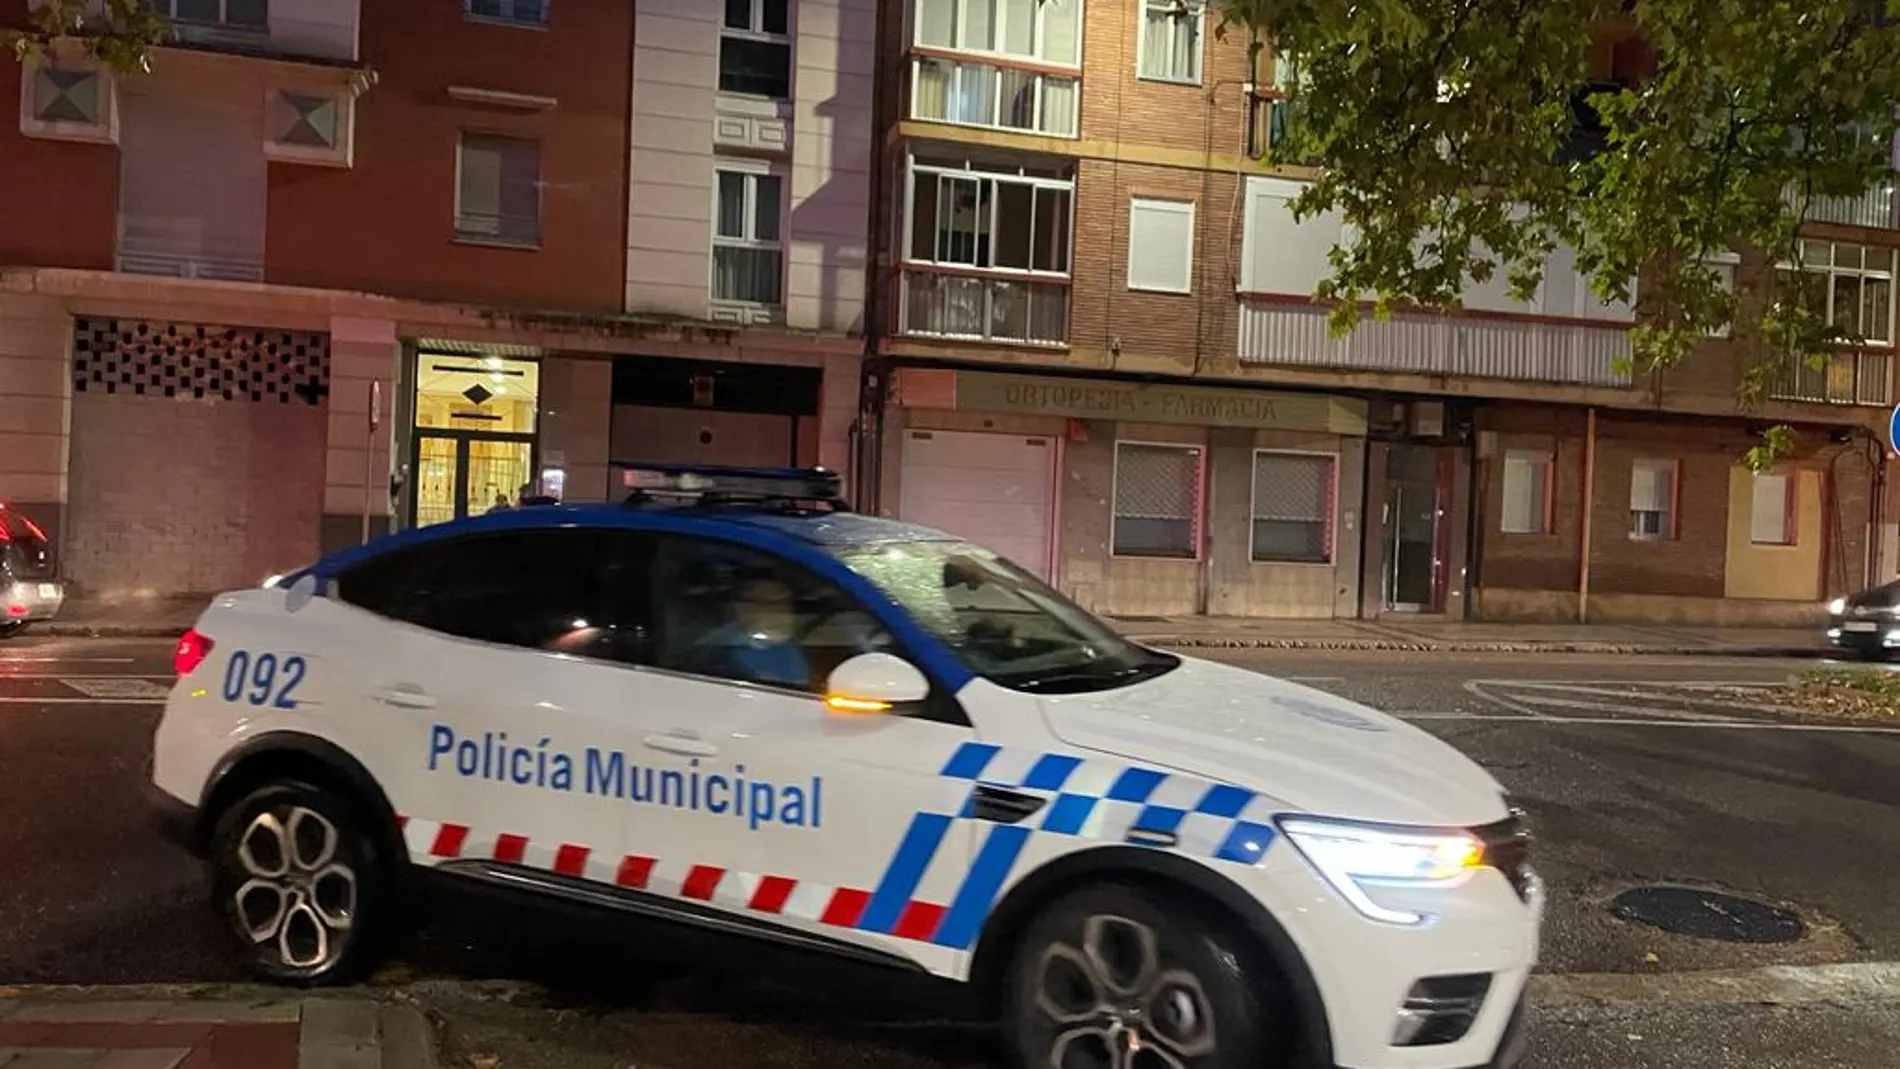 Cuatro jóvenes protagonizan una reyerta y agreden con palos a otros tantos policías locales en Valladolid cuando intentan mediar